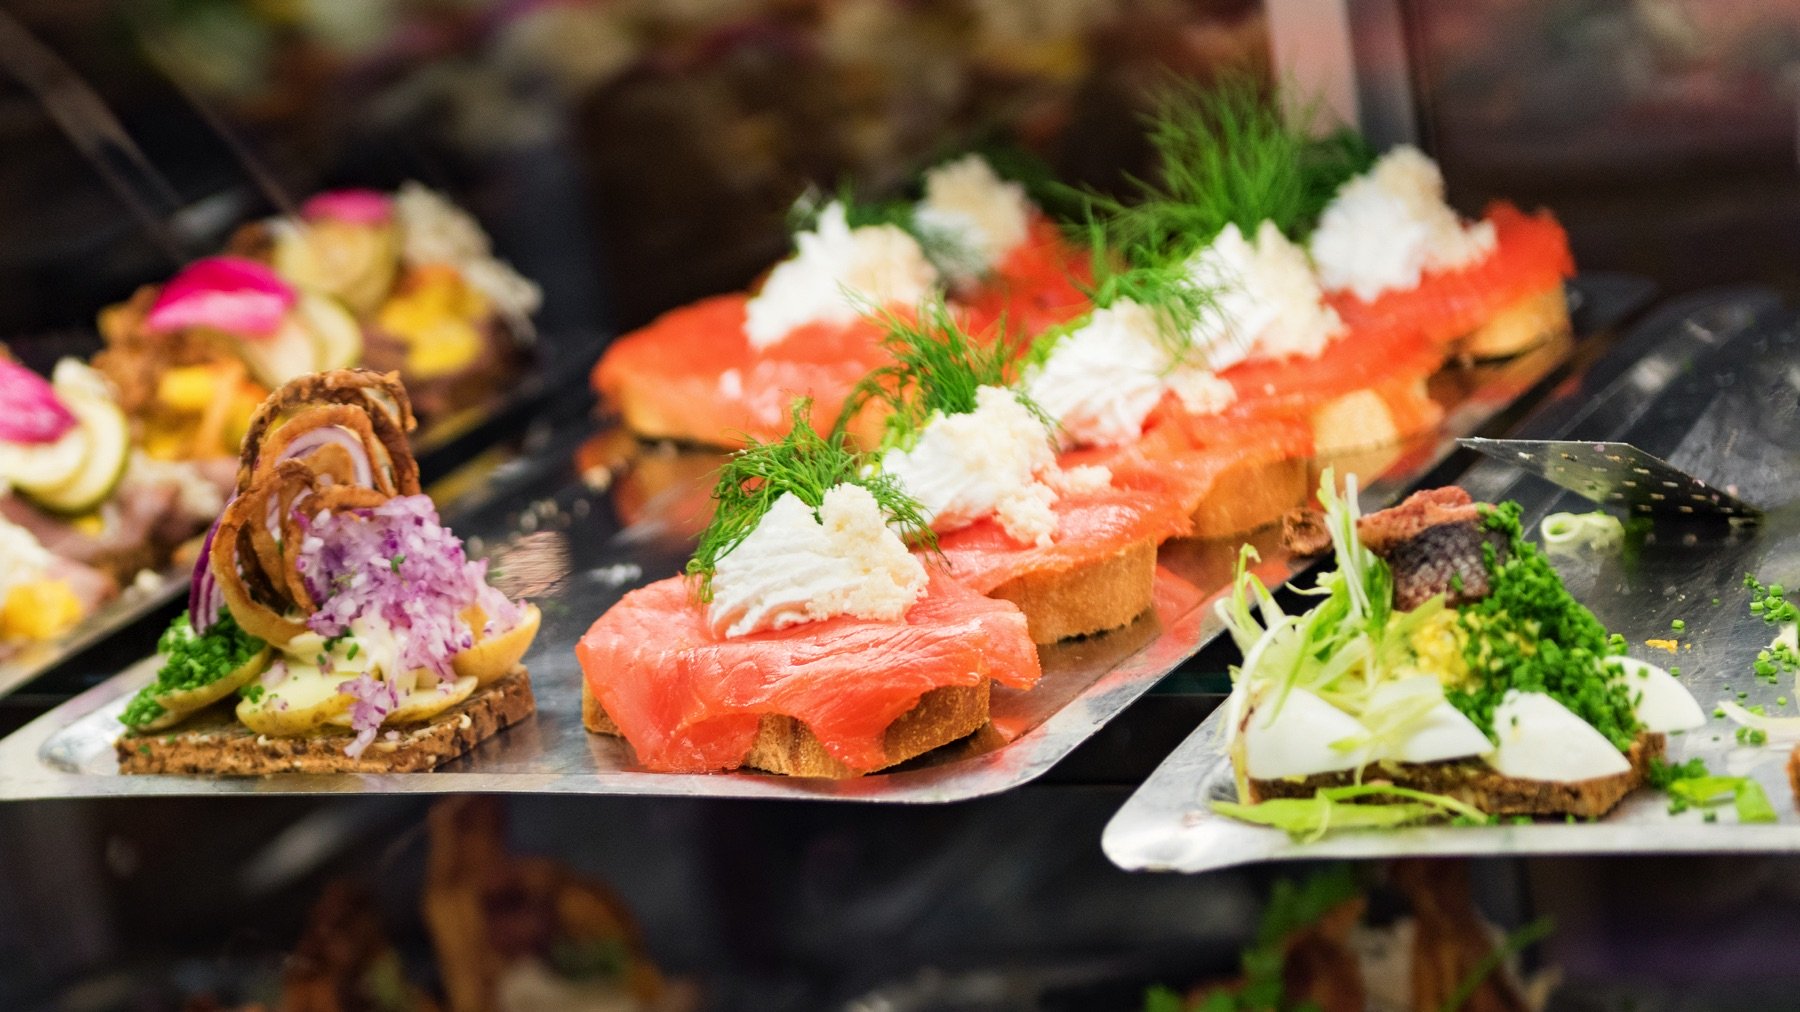 Food in Copenhagen: 10 Must-Try Danish Dishes